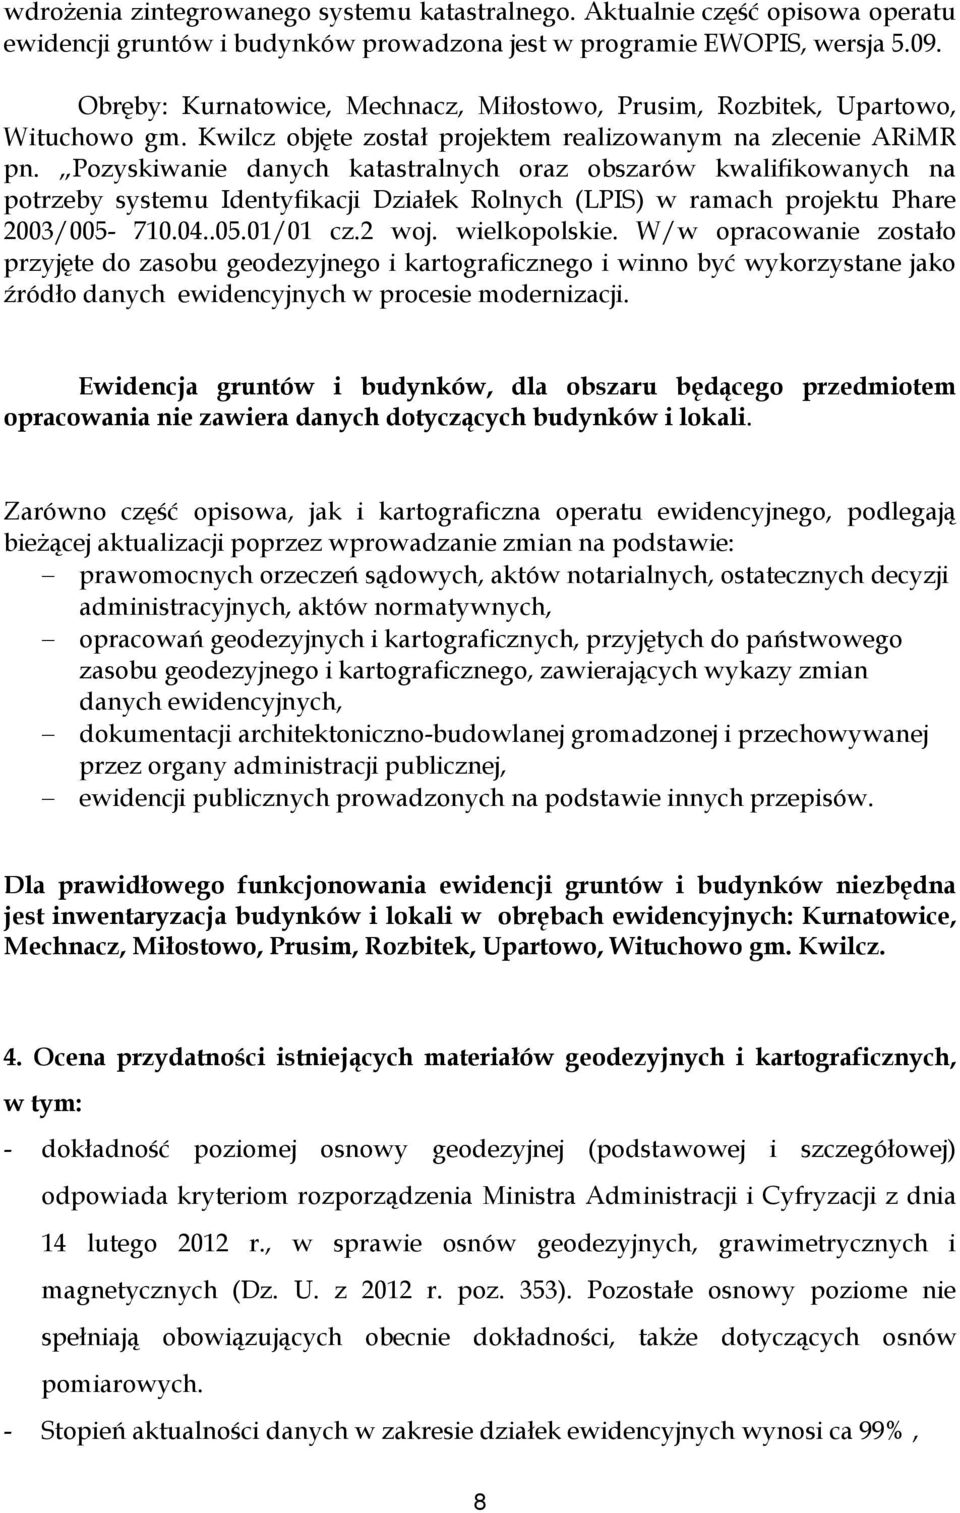 Pozyskiwanie danych katastralnych oraz obszarów kwalifikowanych na potrzeby systemu Identyfikacji Działek Rolnych (LPIS) w ramach projektu Phare 2003/005-710.04..05.01/01 cz.2 woj. wielkopolskie.